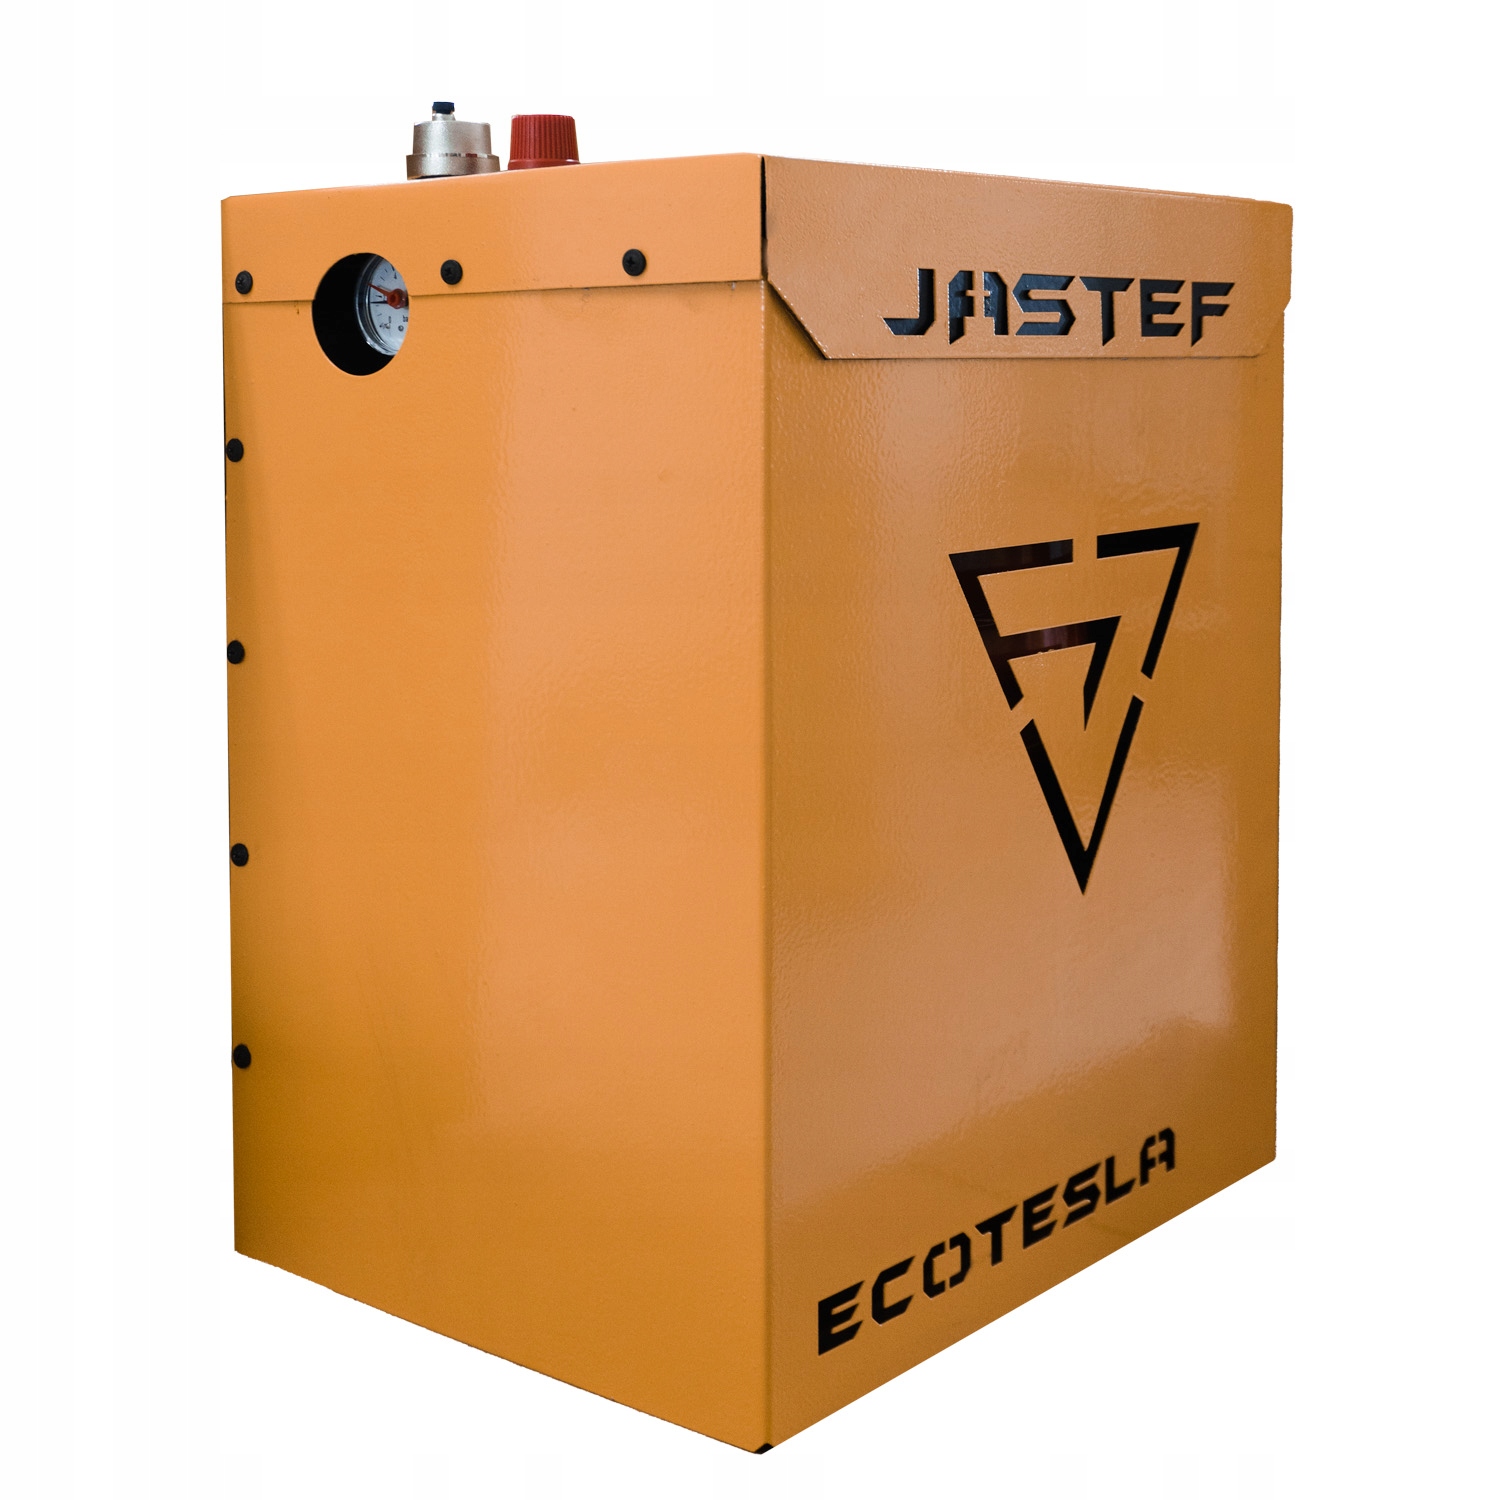 Jastef EcoTesla набор электродный котел 12 кВт код производителя Jastef_EcoTesla_12kW